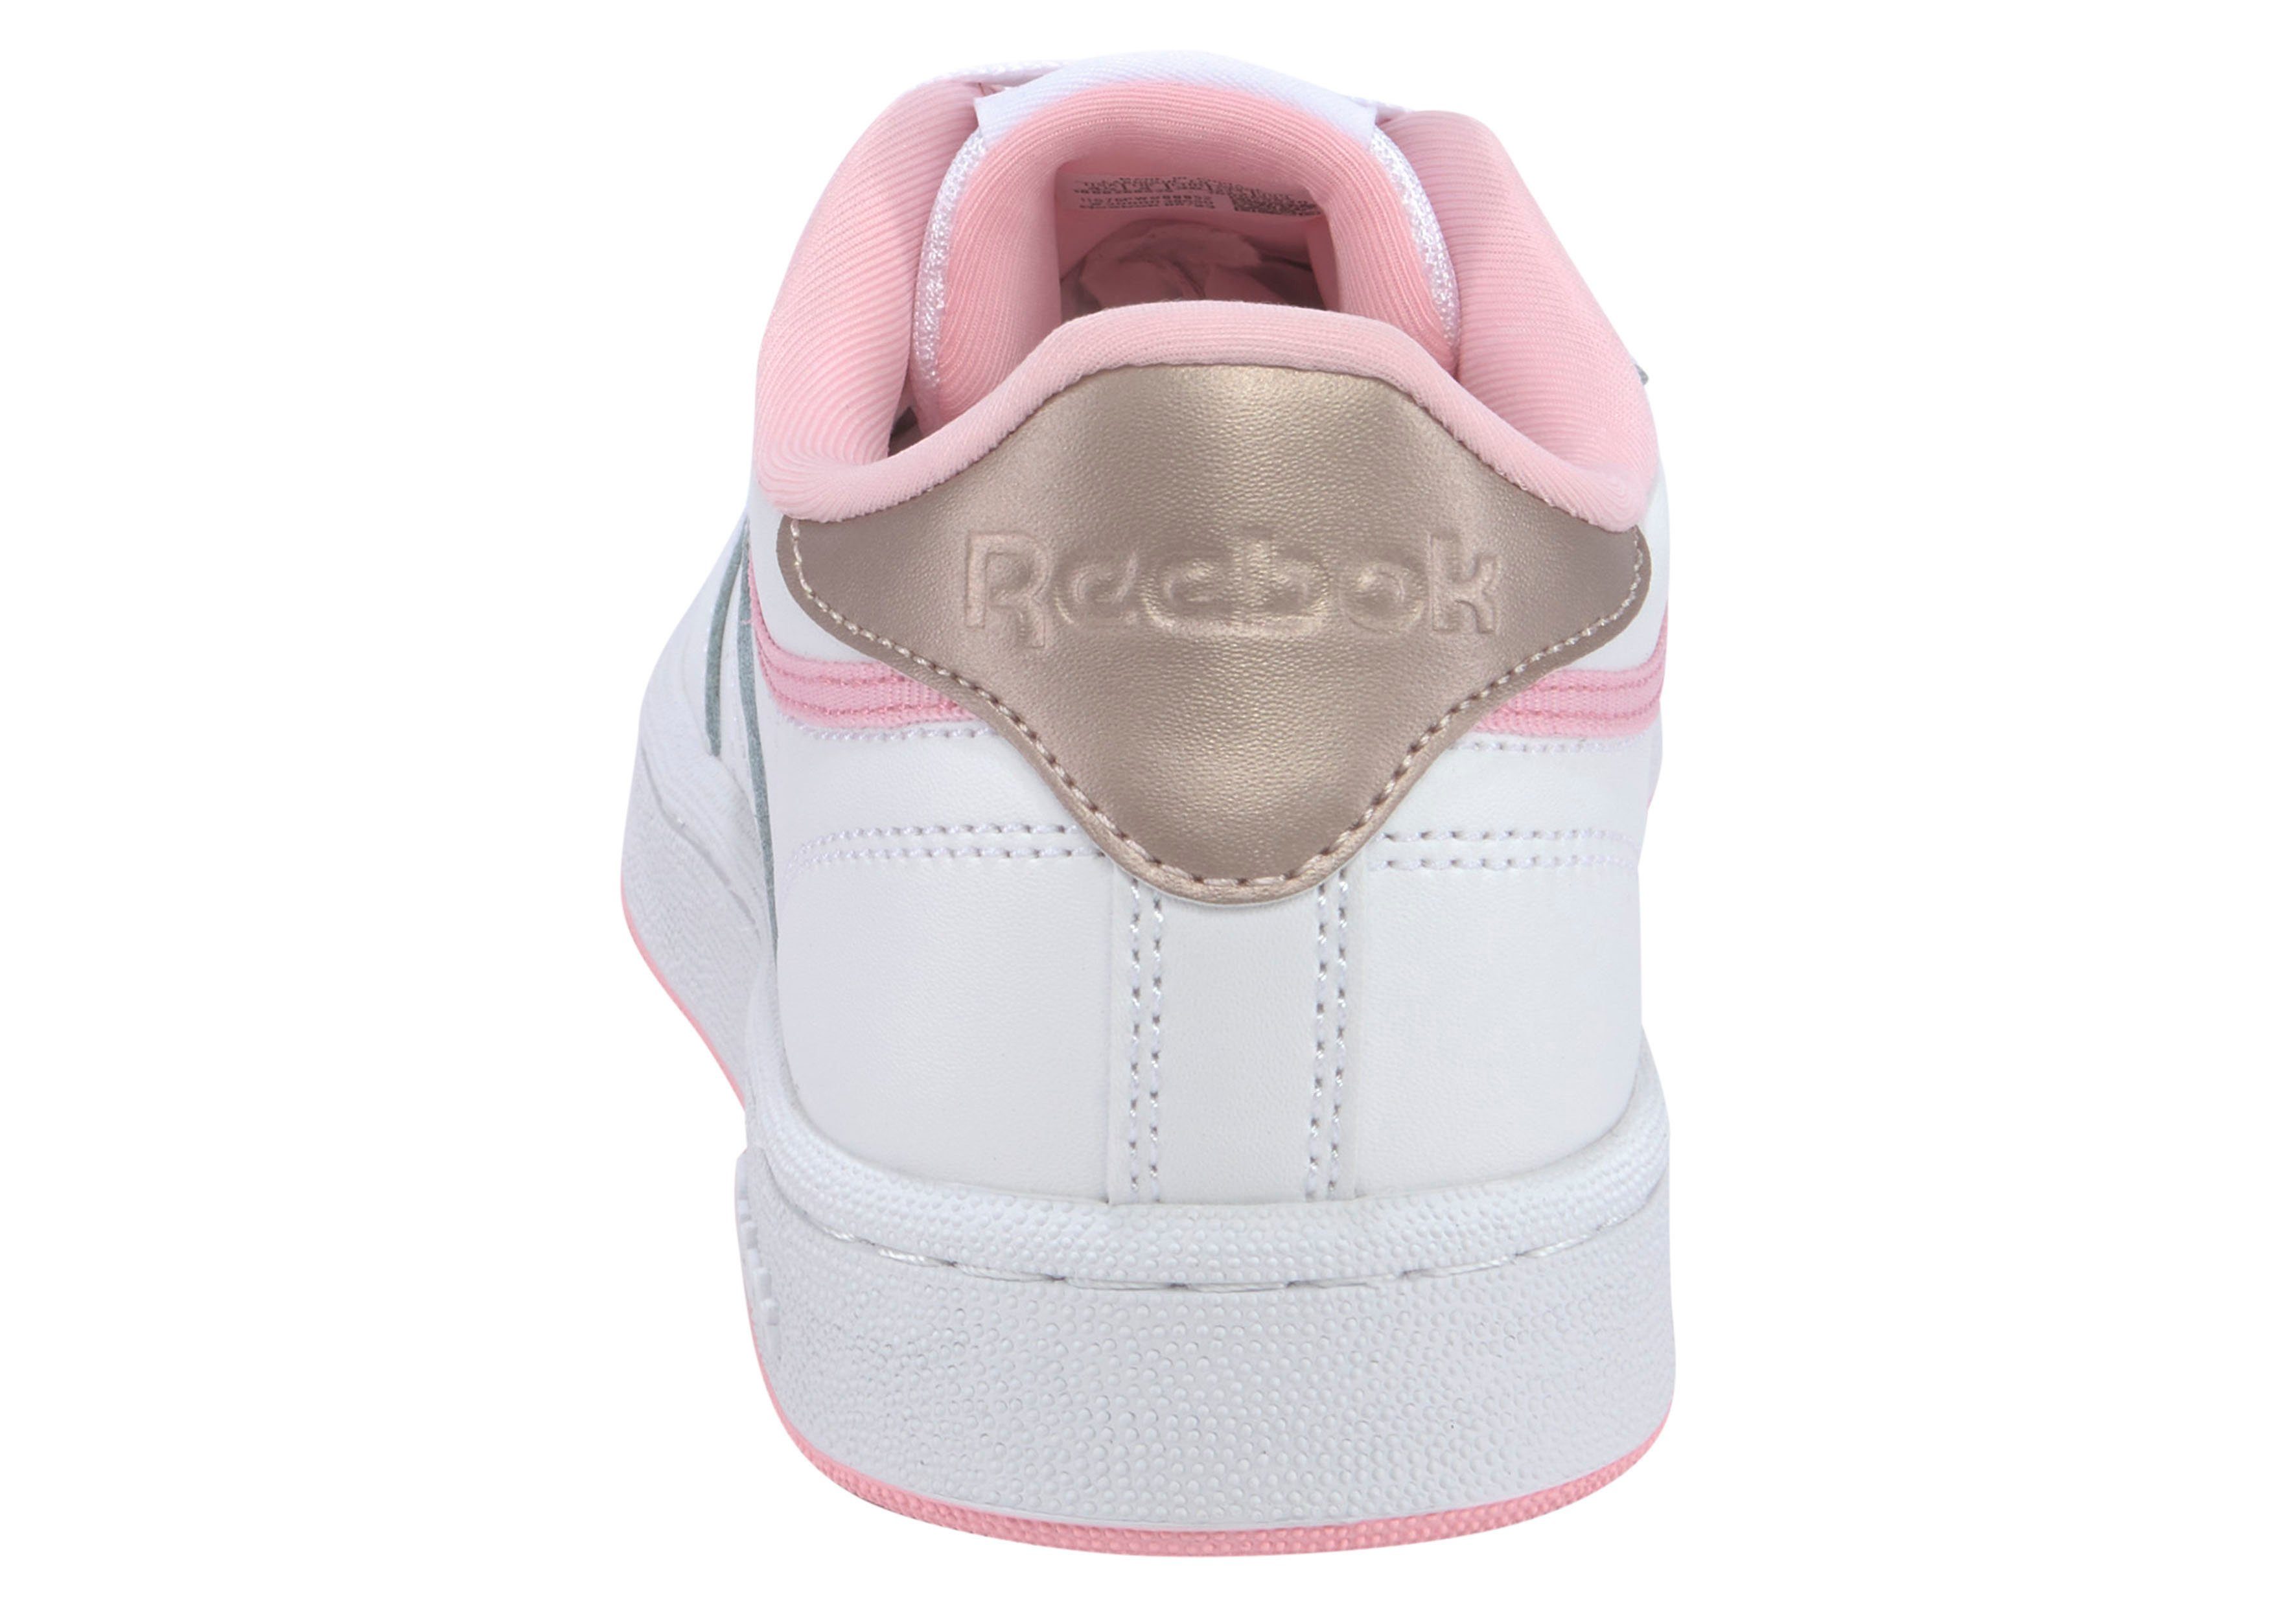 CLUB C weiß-apricot Classic Sneaker Reebok